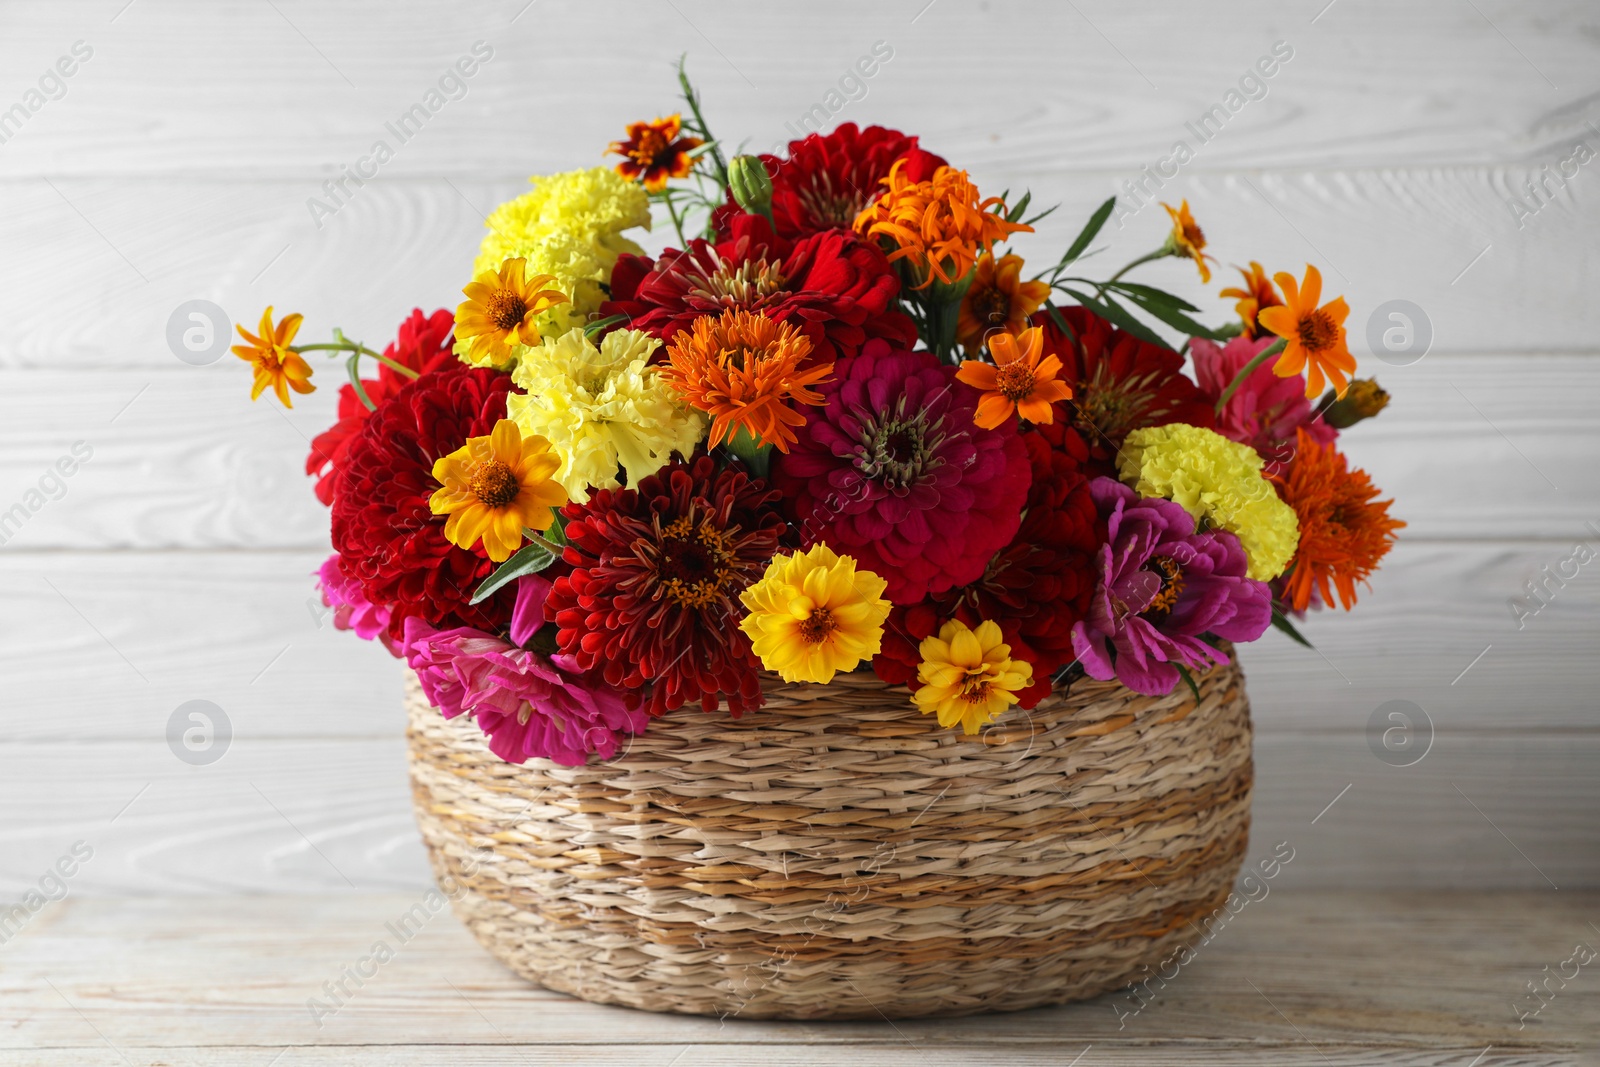 Photo of Beautiful wild flowers in wicker basket on light wooden table